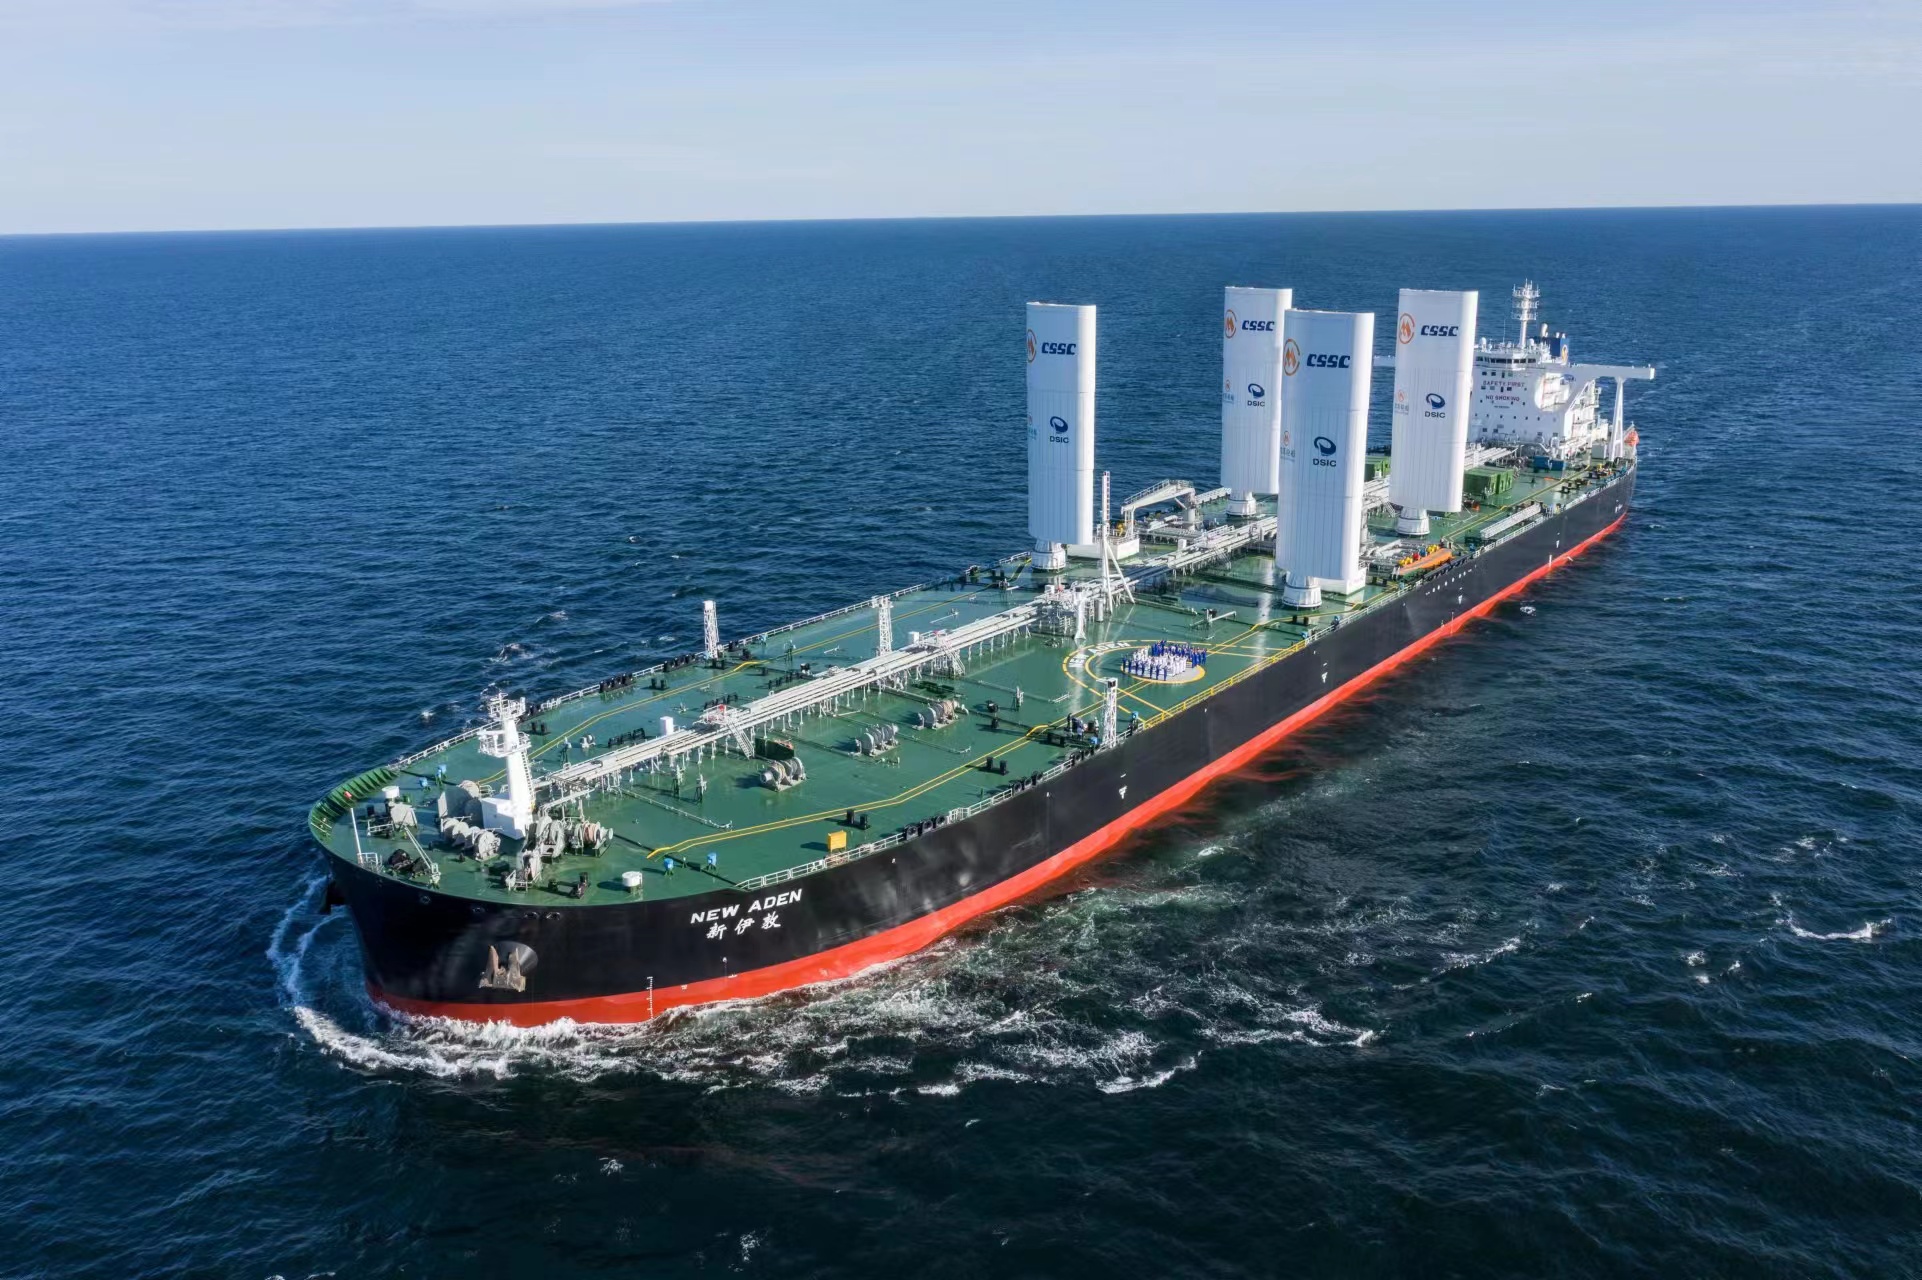 14新一代节能环保型超大型原油船新伊敦”轮，碳纤维复合材料在翼型风帆成功应用.jpg